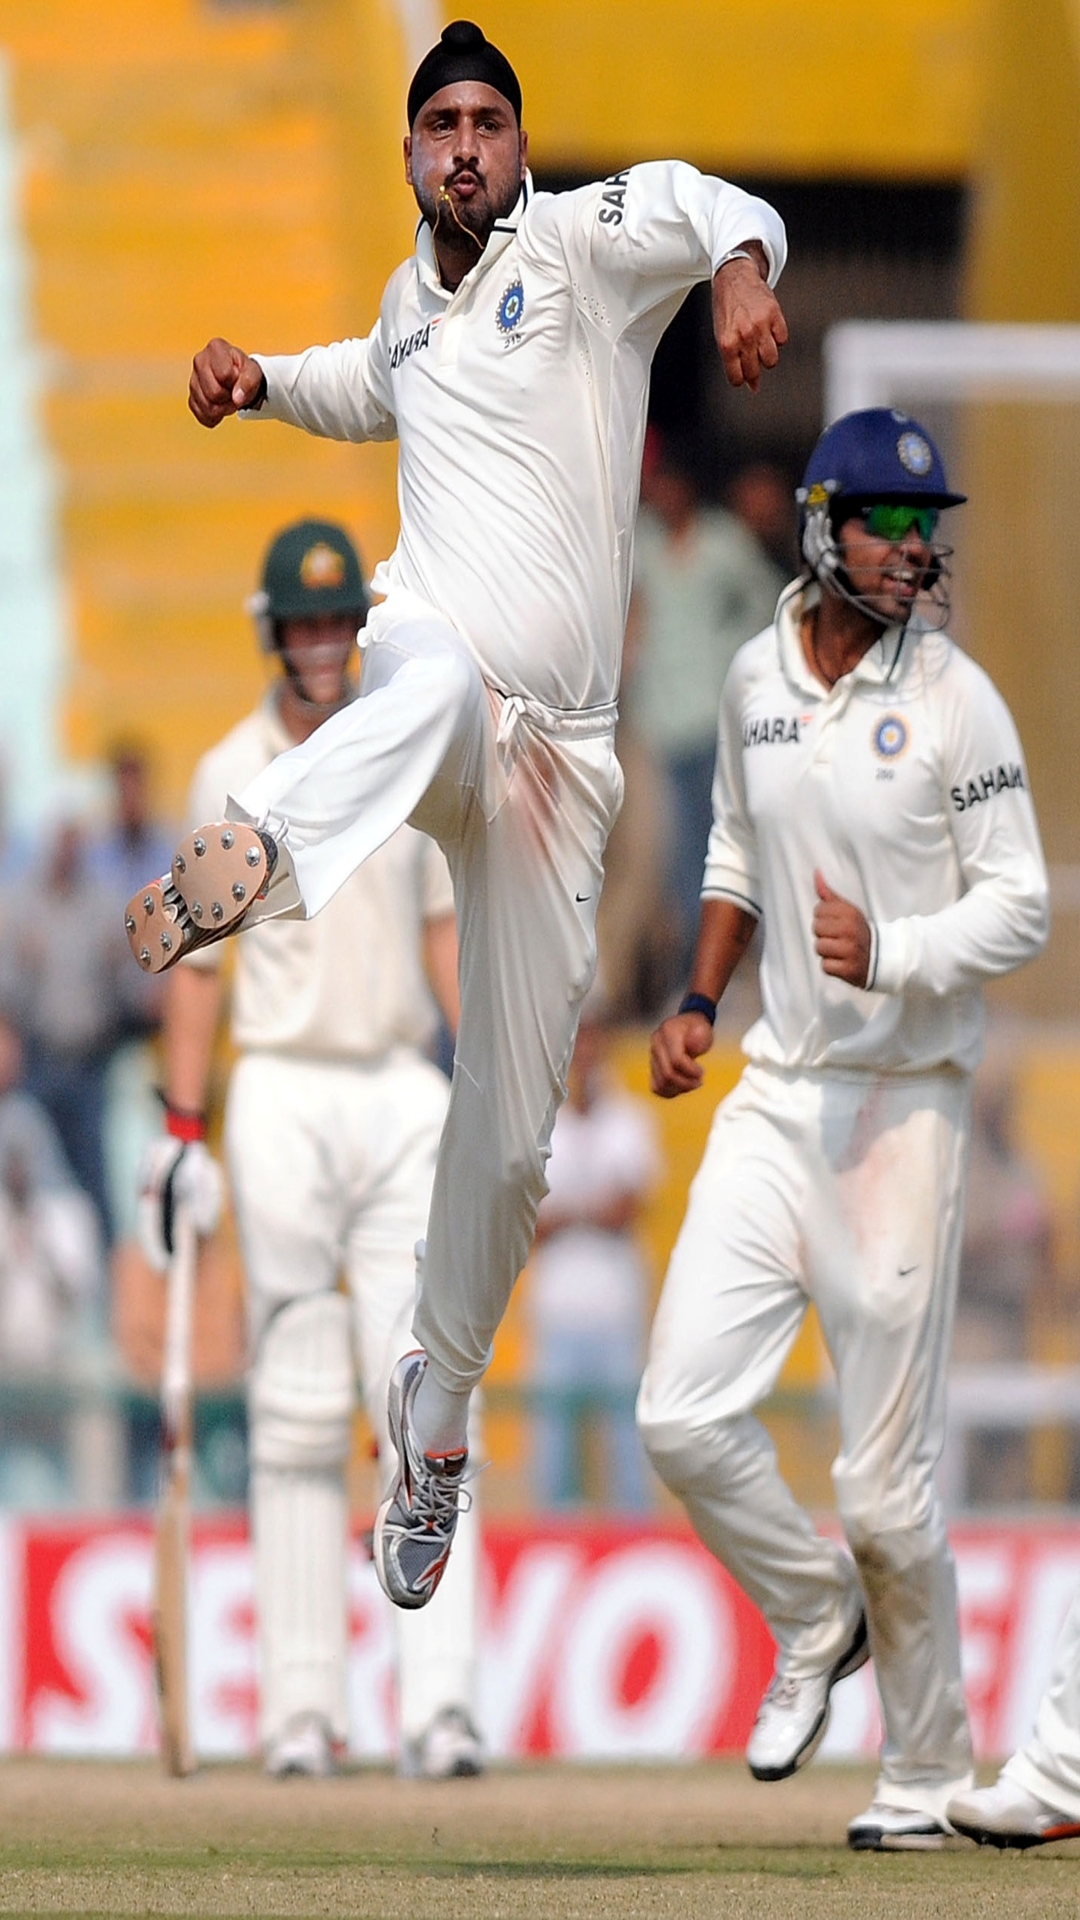 बॉर्डर-गावस्कर ट्रॉफी के इतिहास में सबसे ज्यादा विकेट चटकाने वाले गेंदबाज